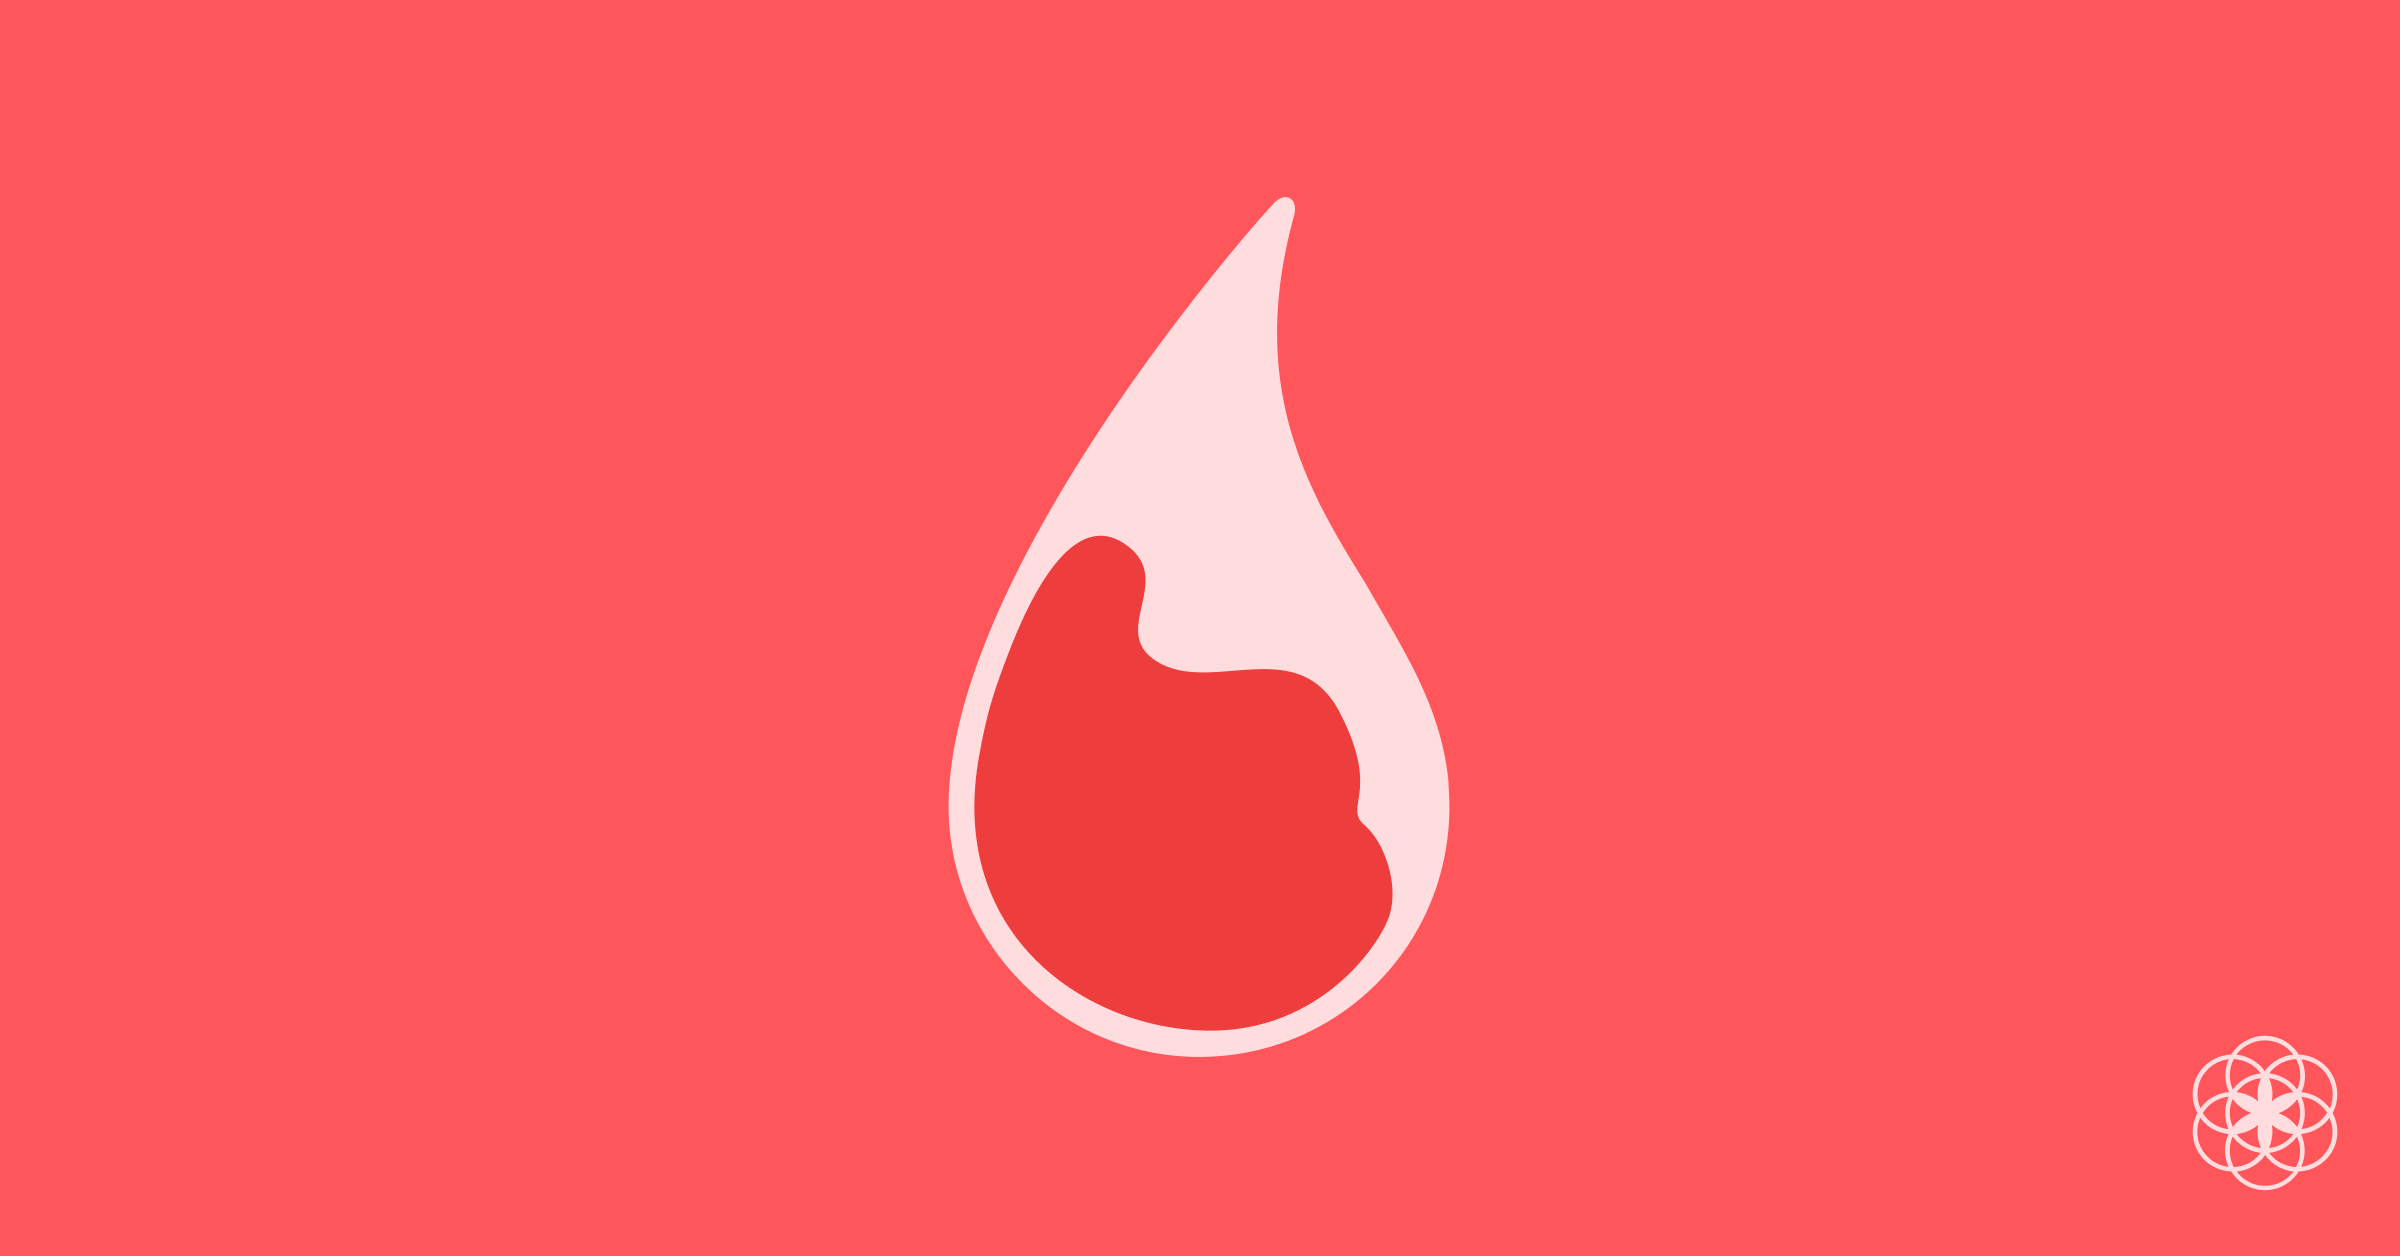 Menstruação com pedaços de sangue é normal? 